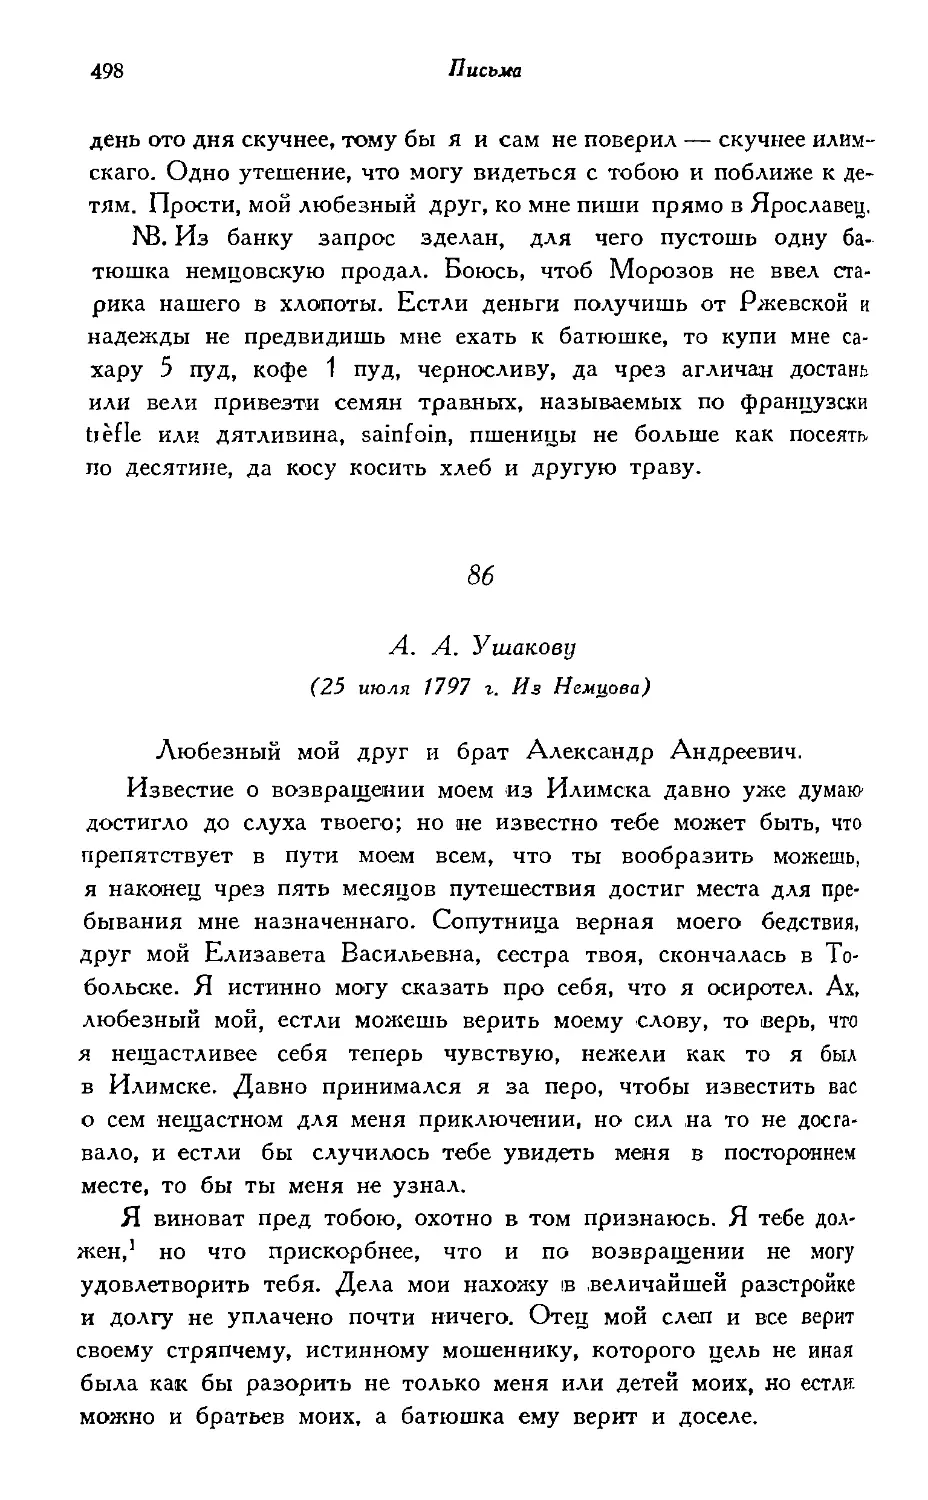 86. А. А. Ушакову (25 июля 1797 г.)